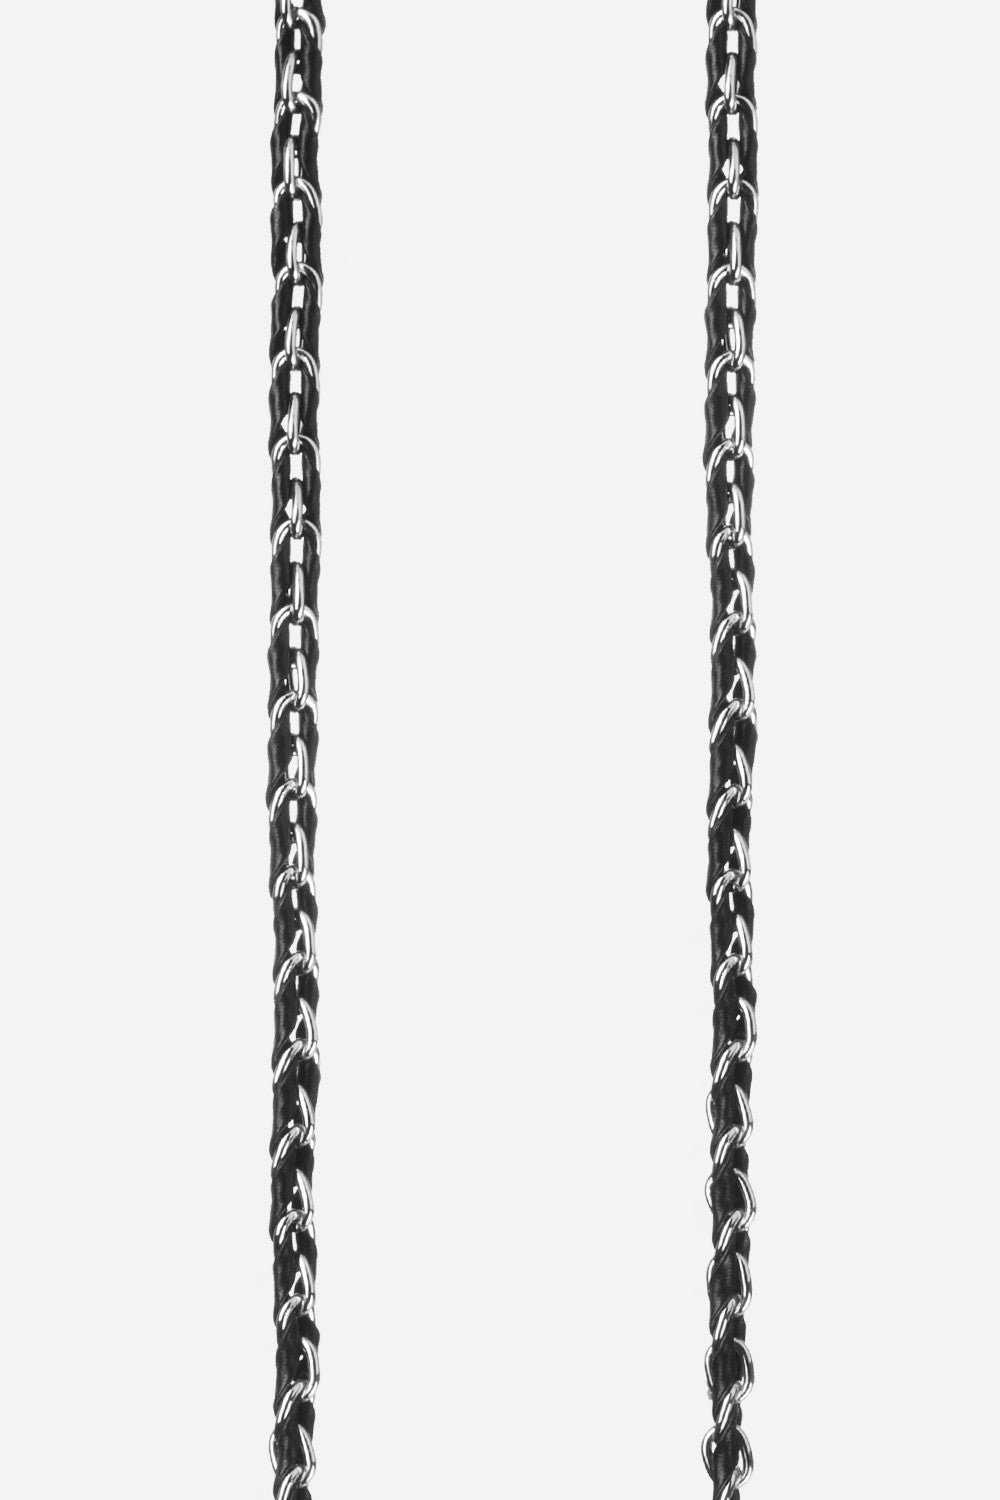 Long Lou Chain Black 120 cm